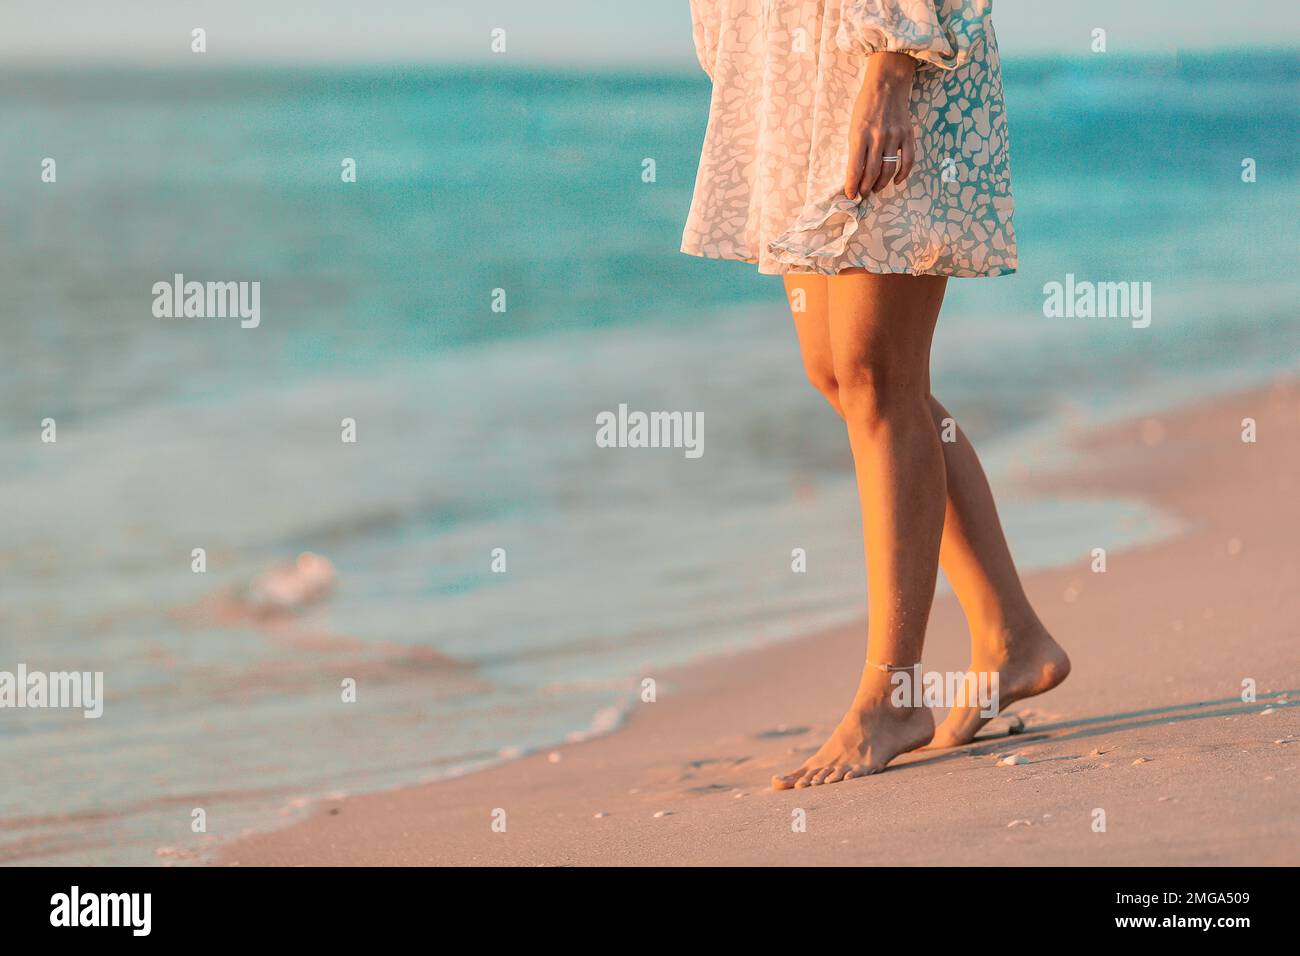 Weibliche Beine in der Nahaufnahme am Strand. Eine Frau in einem Kleid, die am Strand spaziert Stockfoto